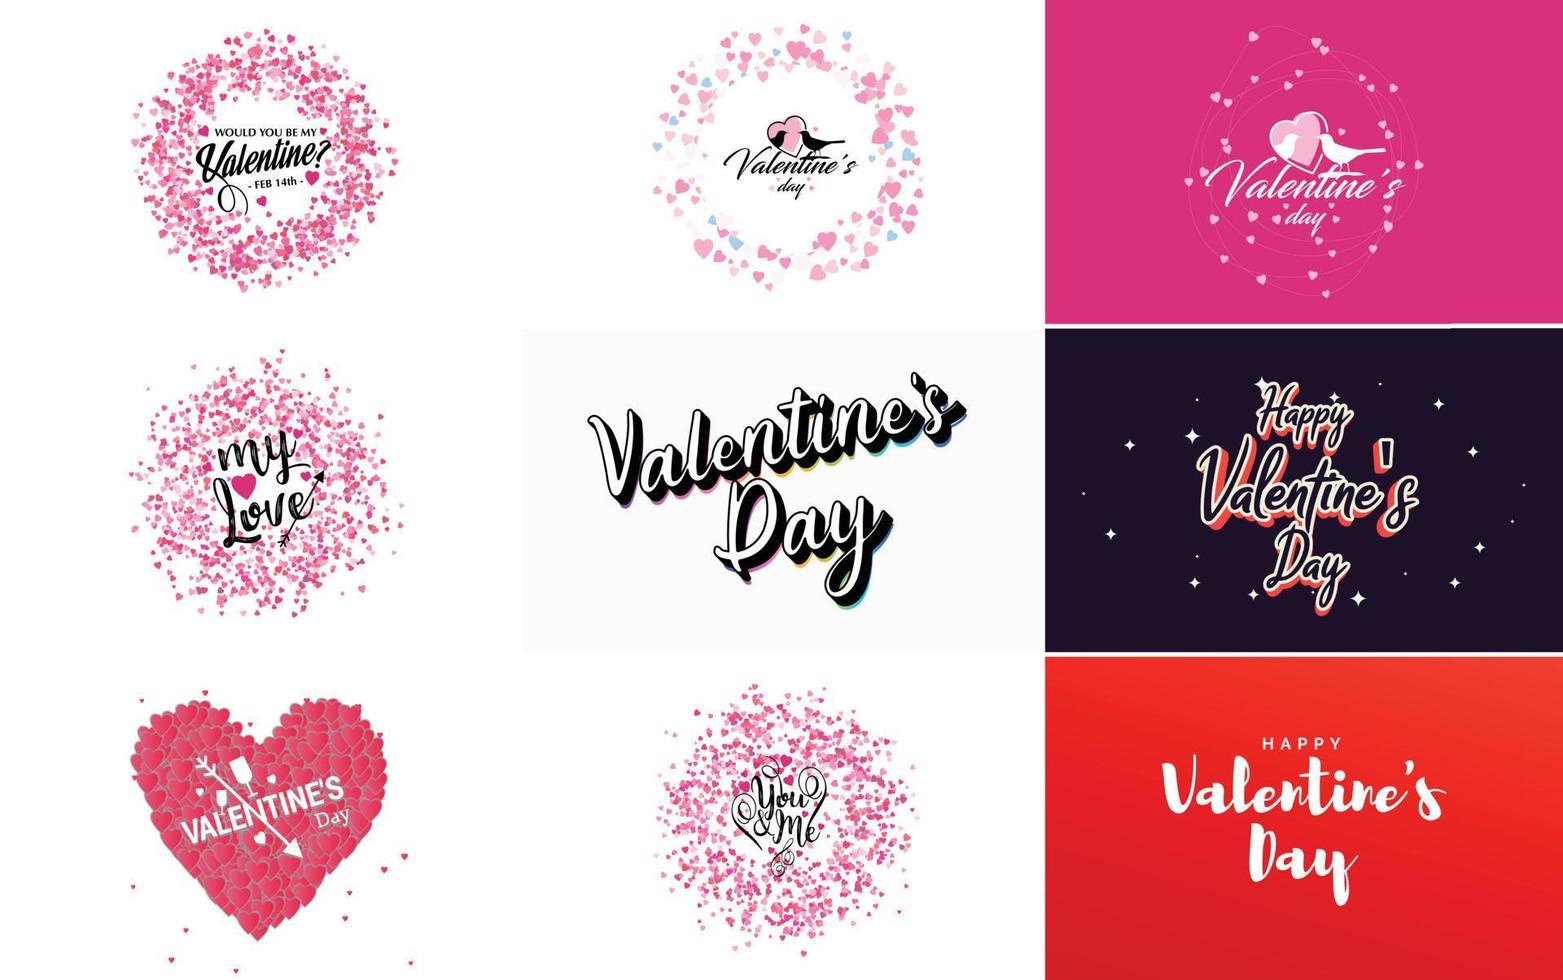 cartel de tipografía de letras feliz día de la mujer con corazón diseño de invitación del día internacional de la mujer vector